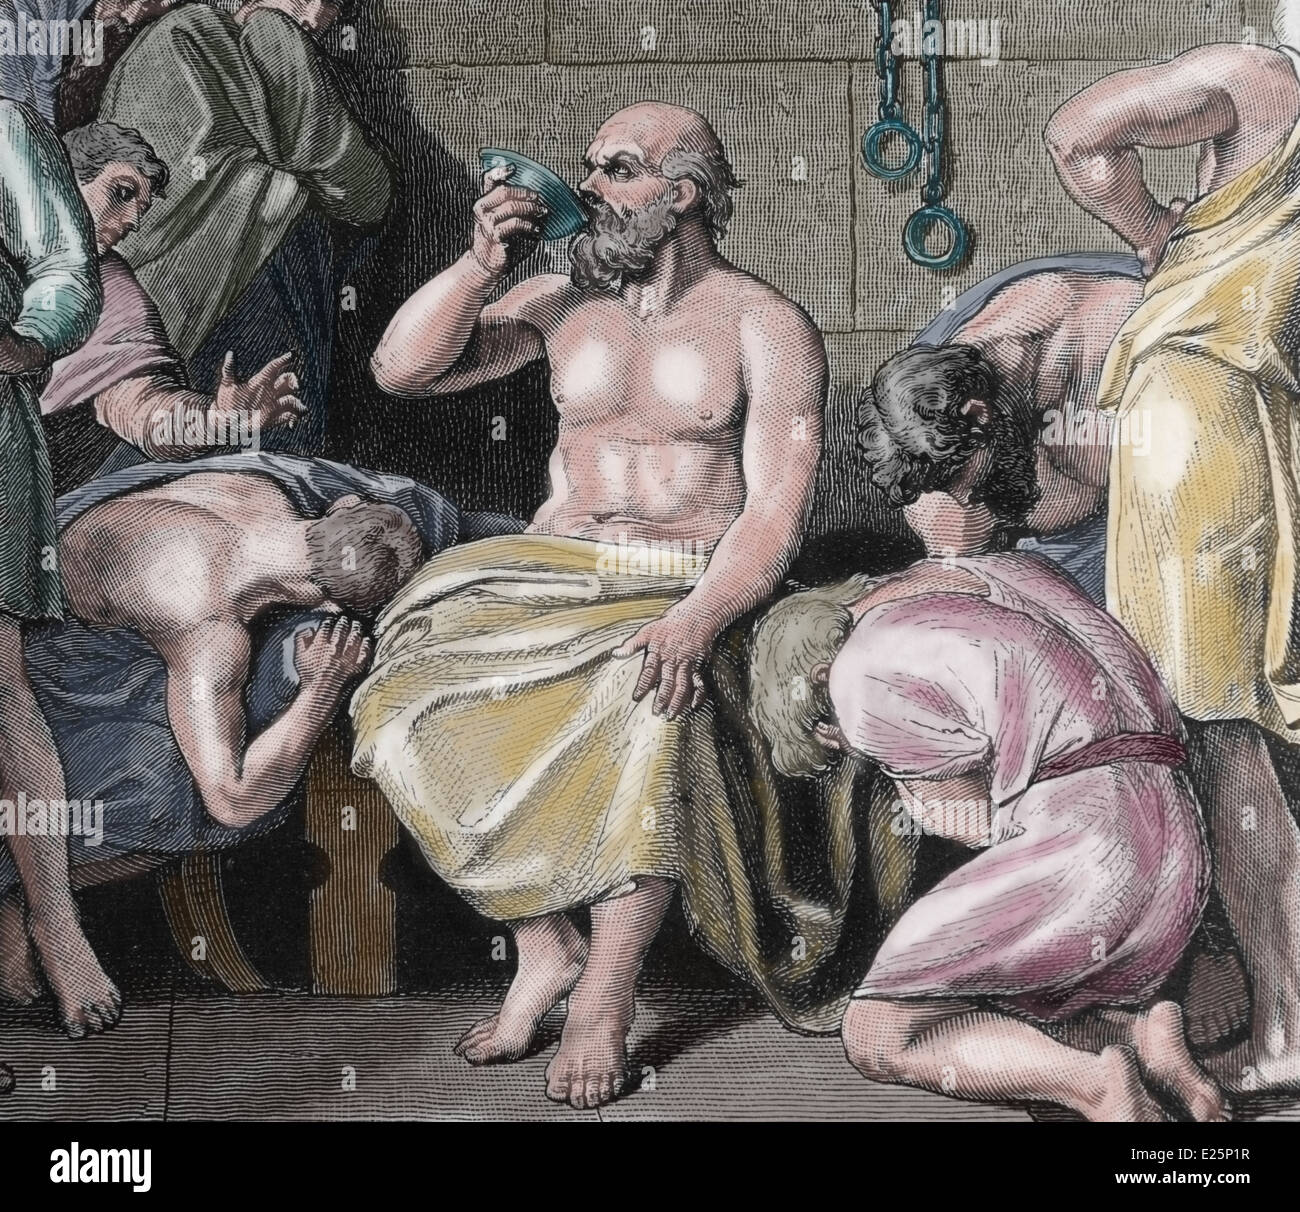 La mort de Socrate (469 BC-399 BC) en buvant du poison. Philosophe Grec classique. La gravure, la couleur. Banque D'Images